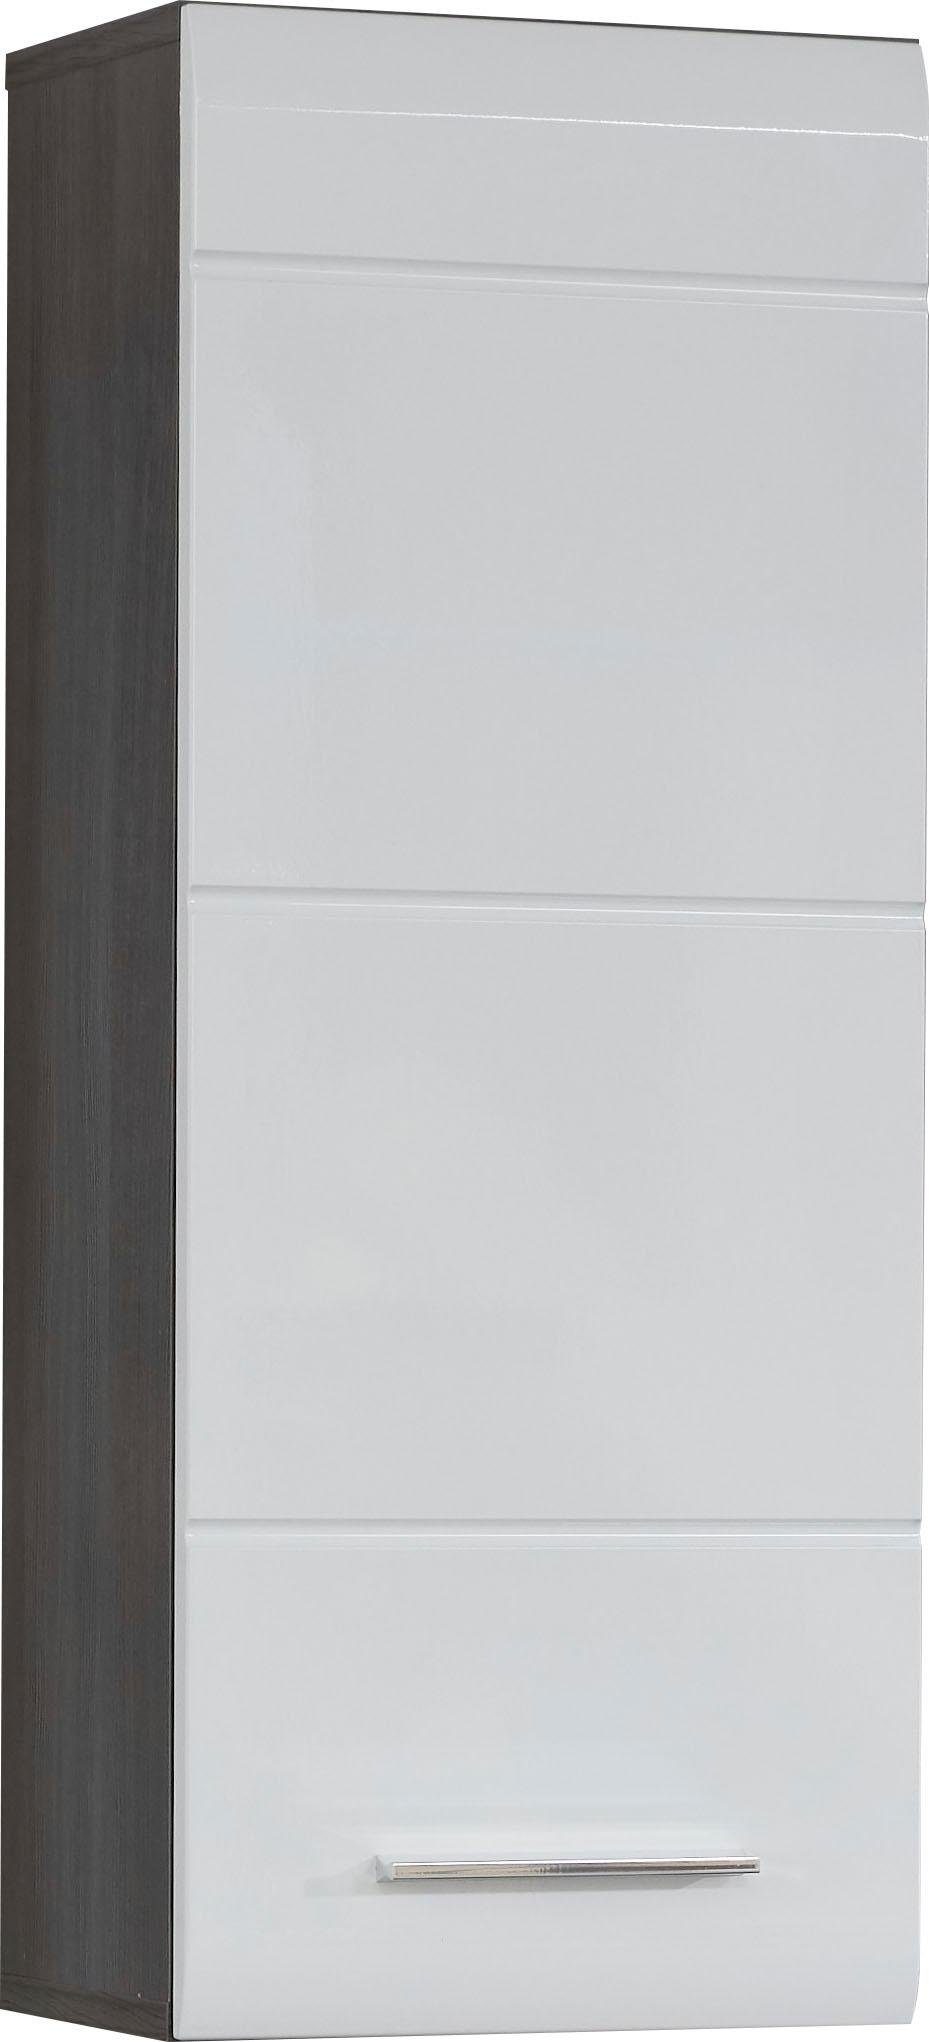 INOSIGN Hängeschrank Sovana Höhe 77 cm, Badezimmerschrank mit Fronten in  Hochglanz- oder Holzoptik, Fronten mit Hochglanz- bzw. Holzoptik